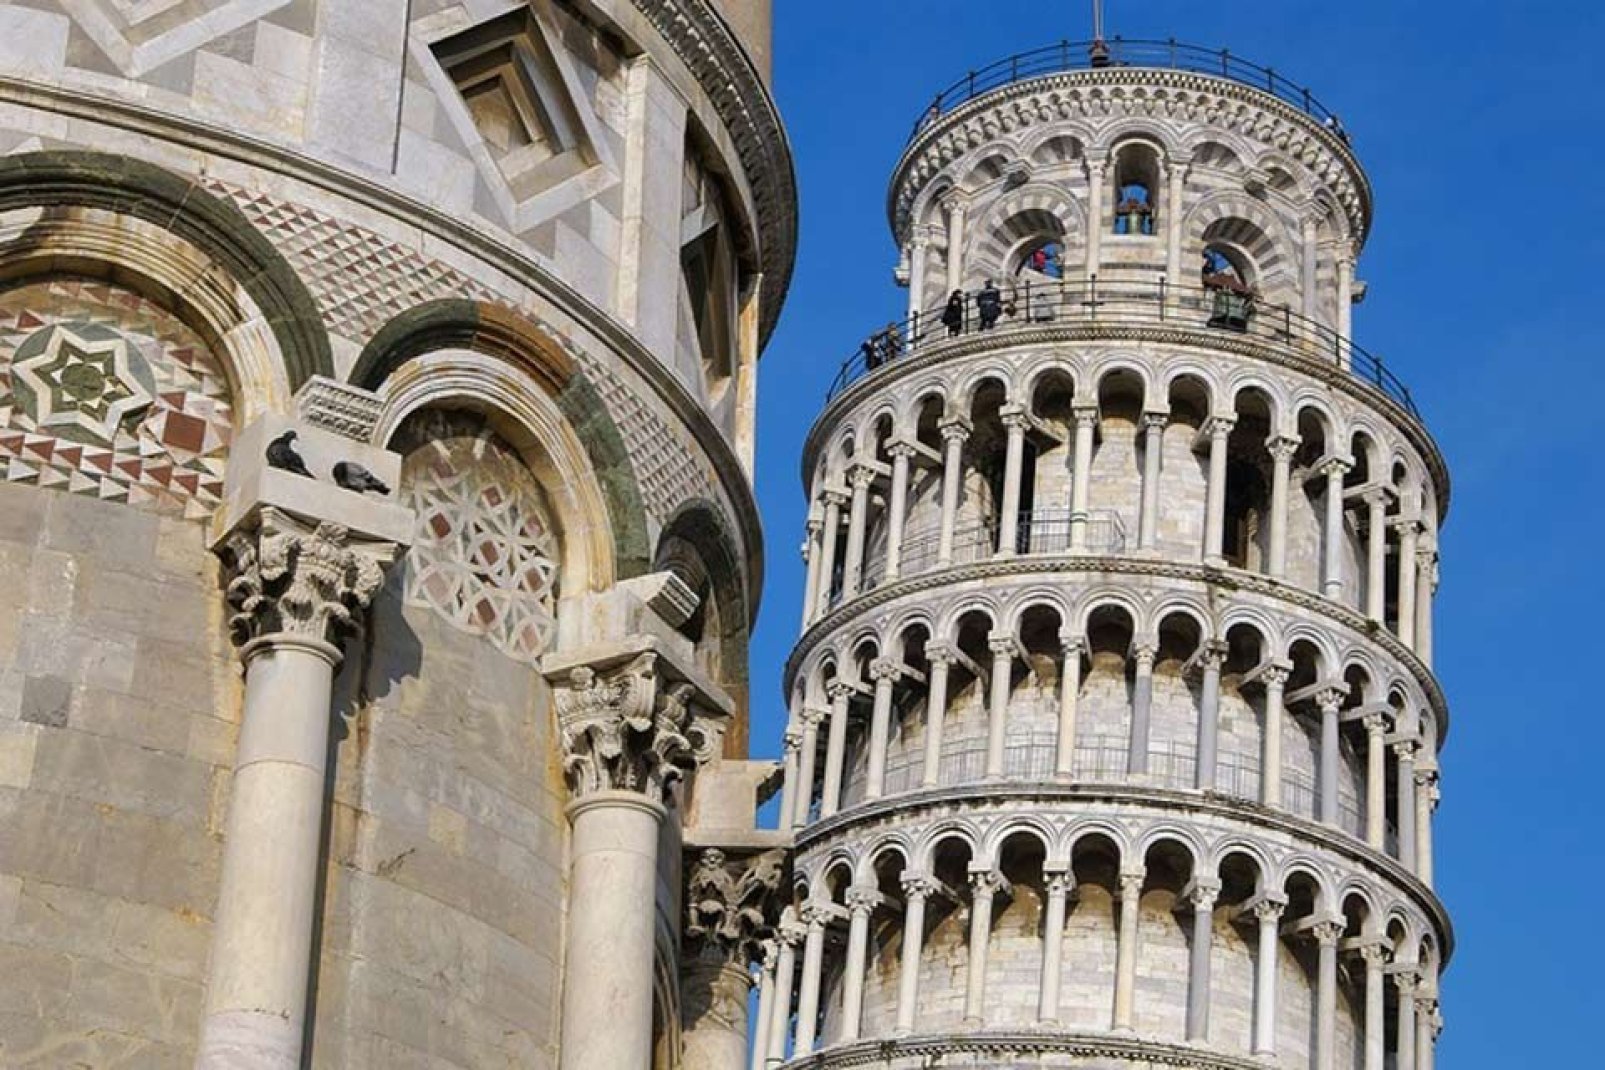 La torre campanaria di Pisa, nota più semplicente come torre di Pisa, è conosciuta in tutto il mondo anche a causa della sua netta pendenza